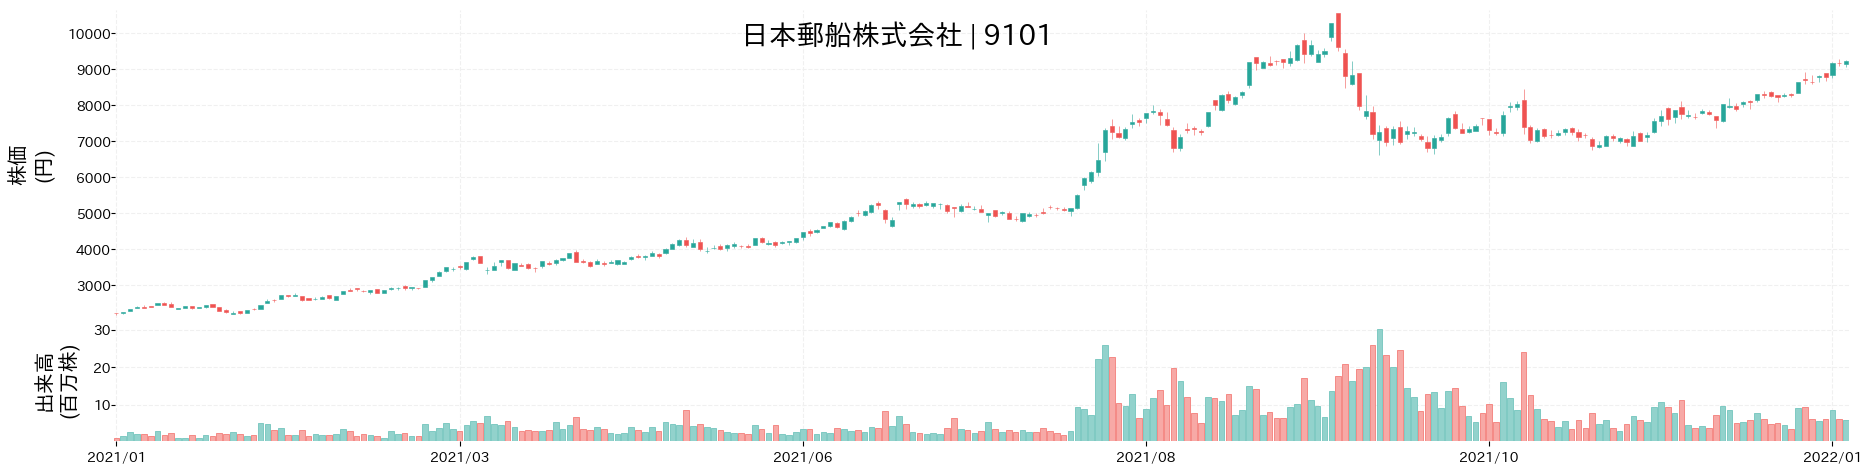 日本郵船の株価推移(2021)